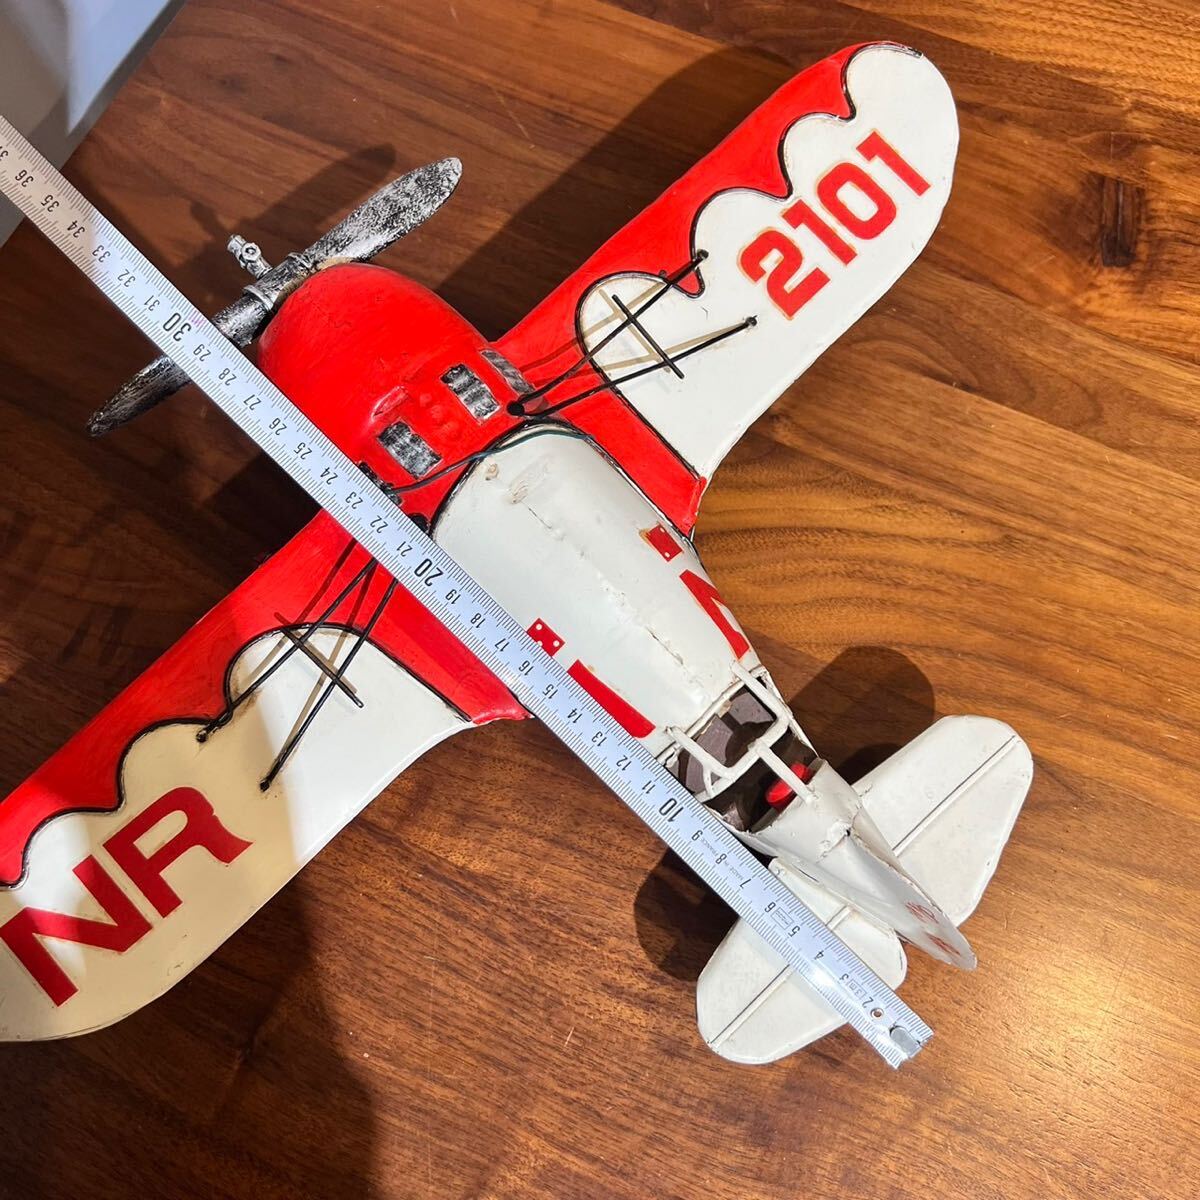 【即決】ジービーレーサー ブリキ レース用飛行機模型 Gee Bee Racer NR2101 全長約32cm 幅43.5cm 高さ約15cm 完成品